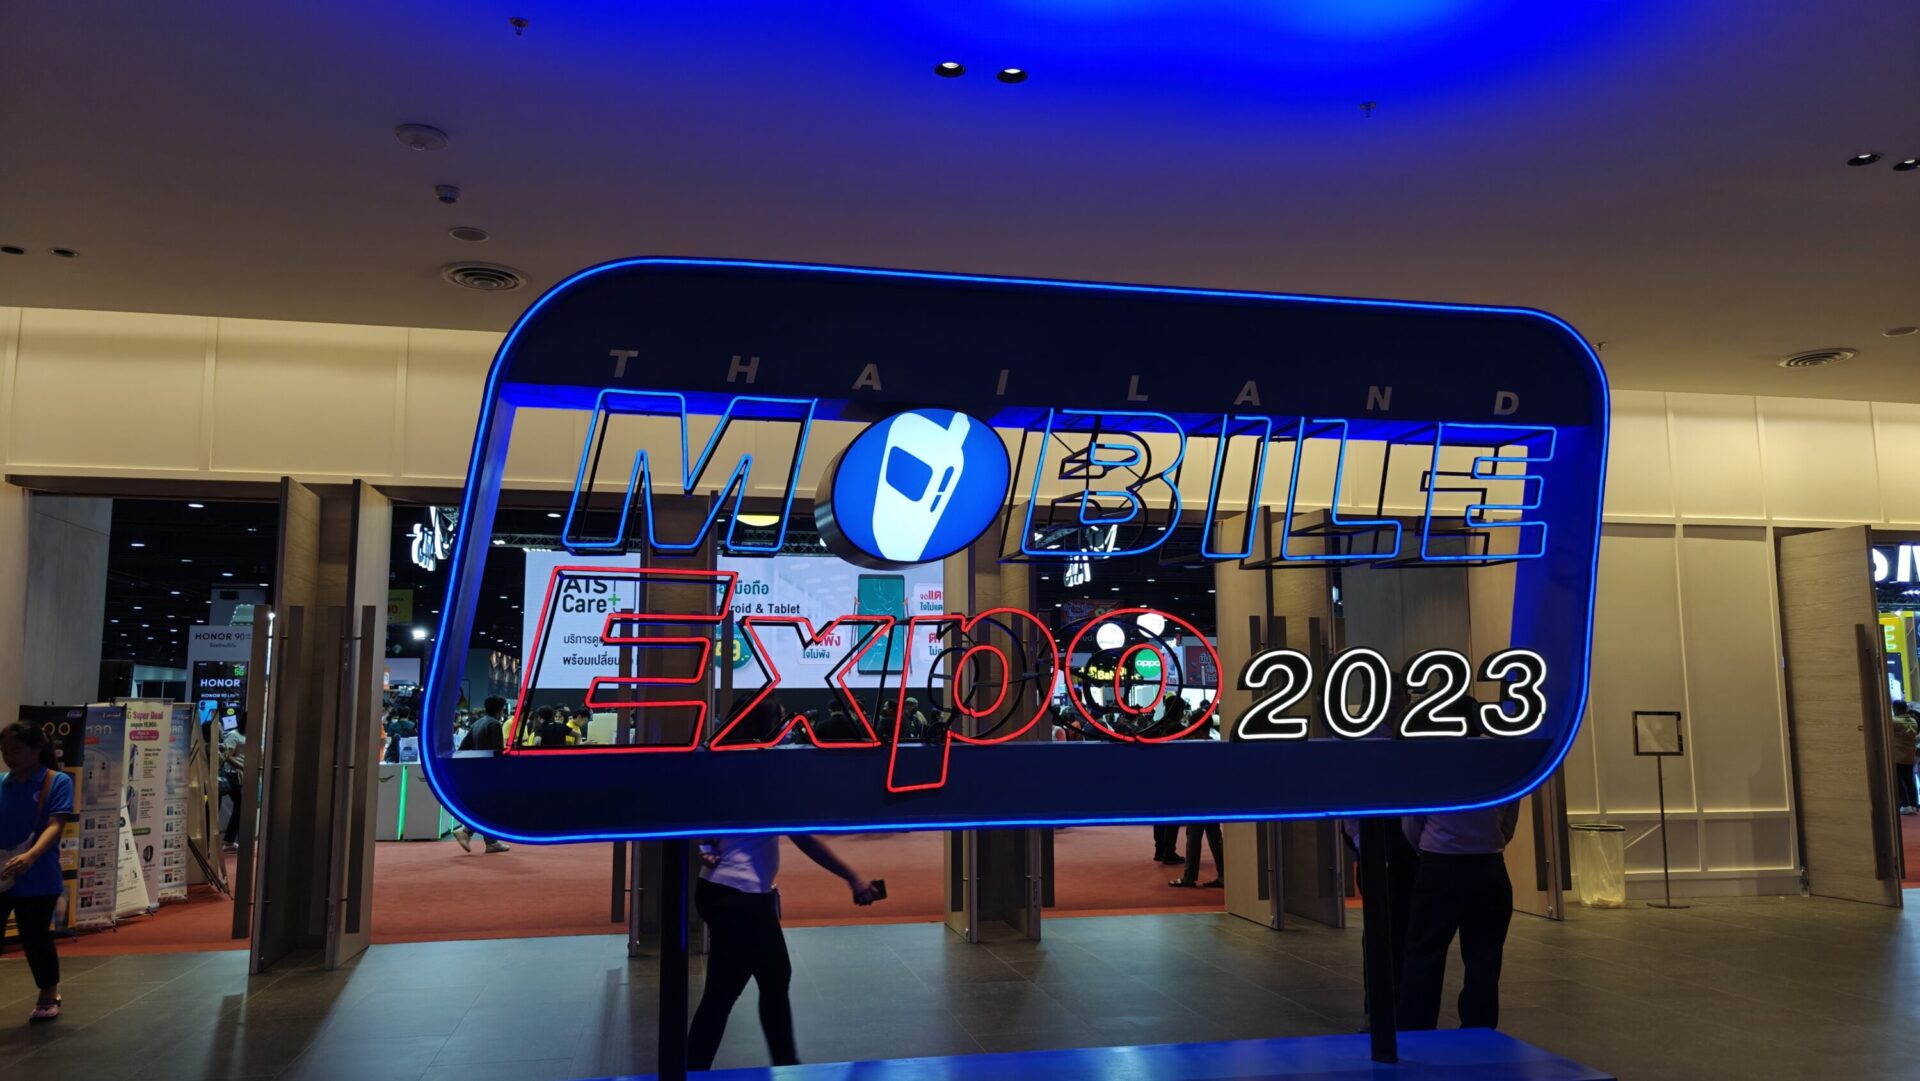 พาชมโปรโมชันสมาร์ตโฟนลดราคาในงาน Thailand Mobile Expo 2023 (รอบปลายปี)